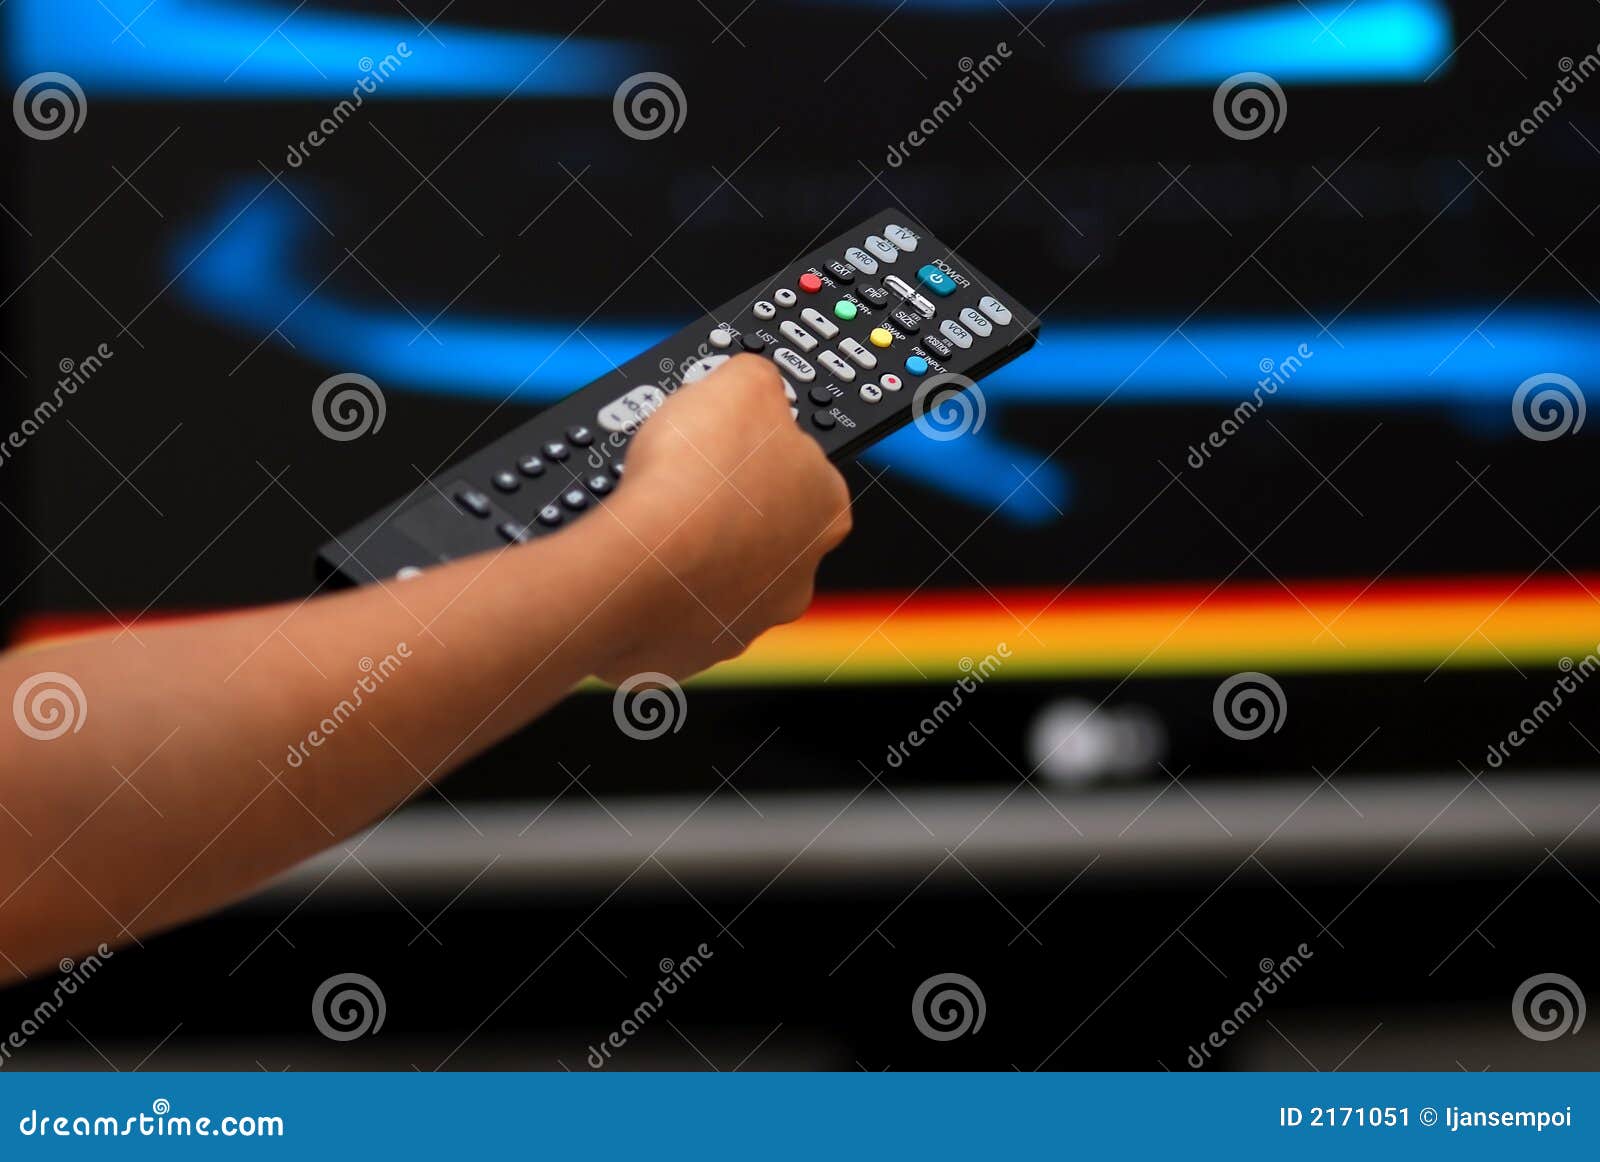 televison remote control